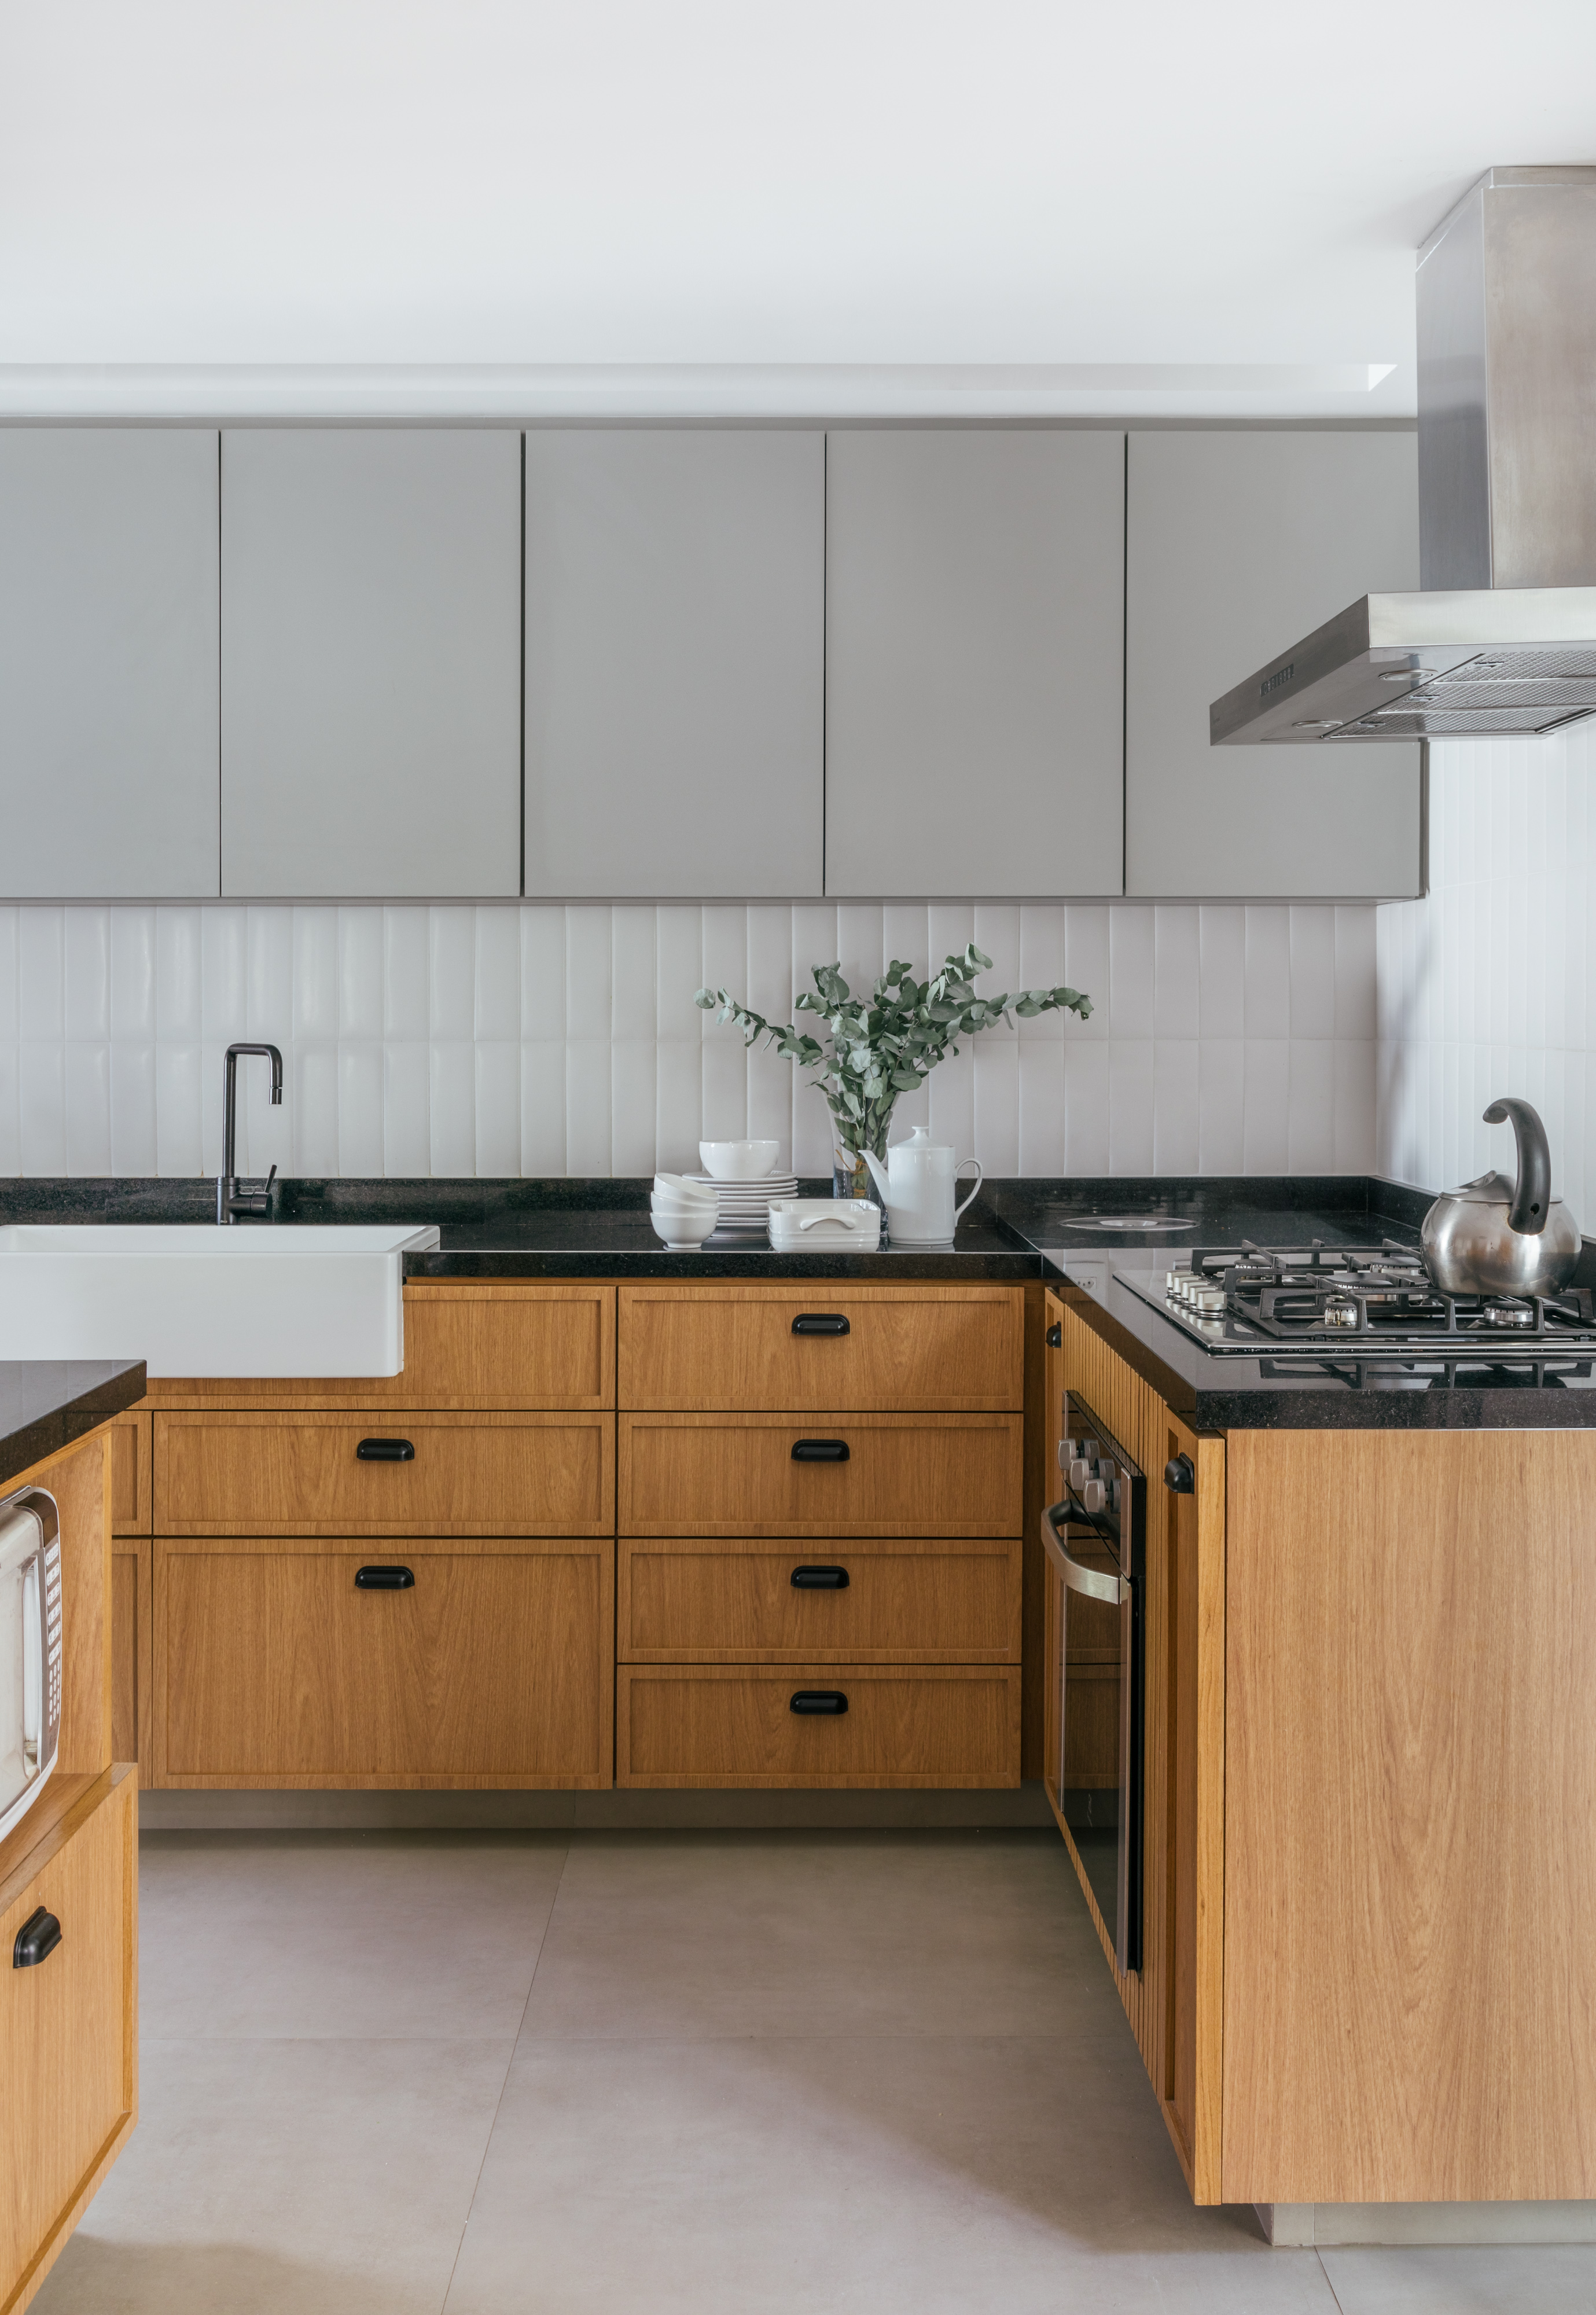 Projeto de Studio A+G Arquitetura. Na foto, cozinha com armários cinza e amadeirados e bancada preta.